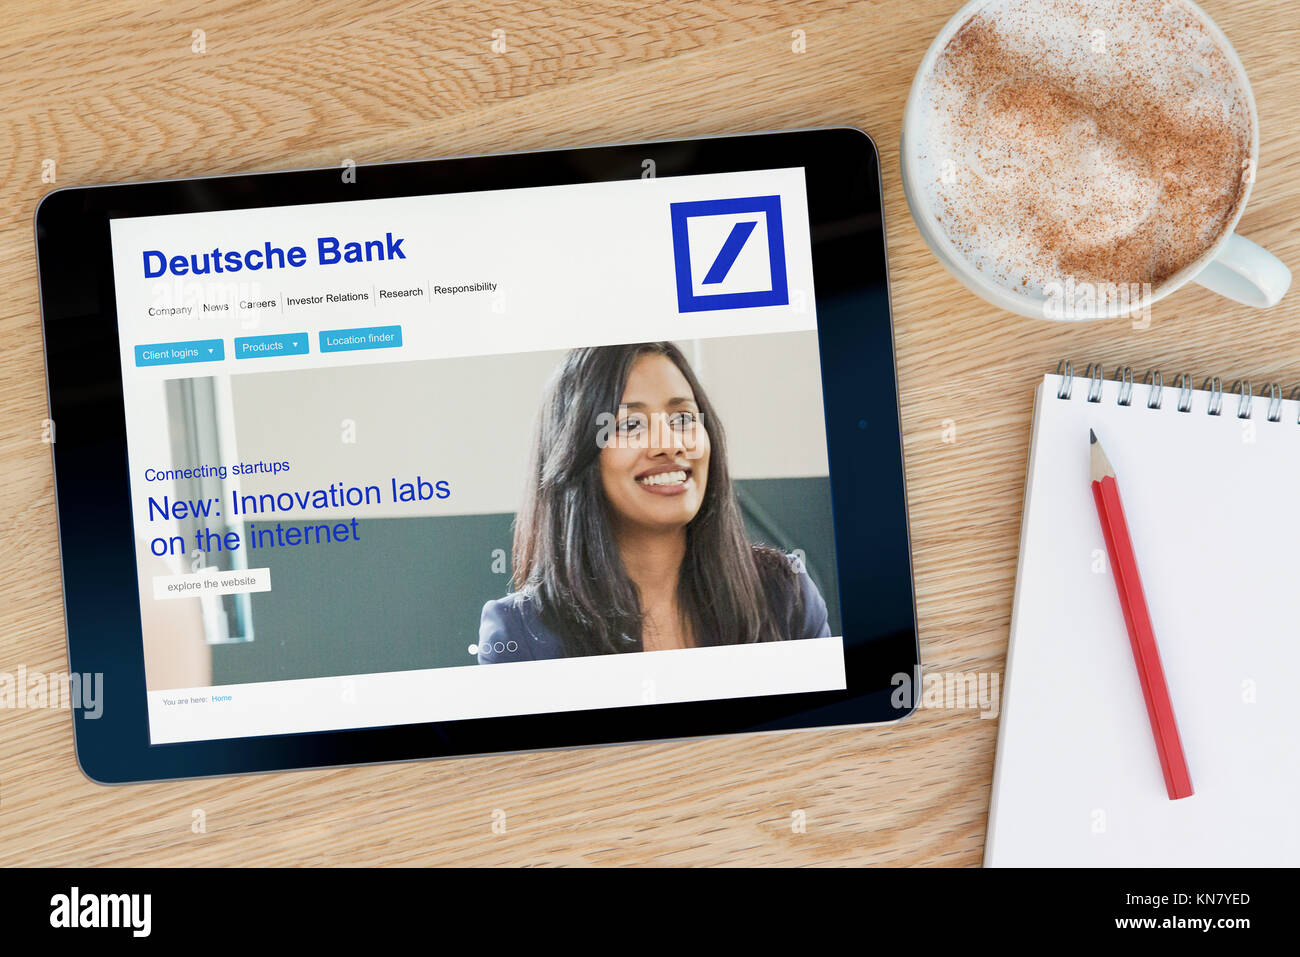 La Deutsche Bank site sur un iPad tablet device qui repose sur une table en bois à côté d'un bloc-notes et un crayon et une tasse de café (rédaction uniquement) Banque D'Images